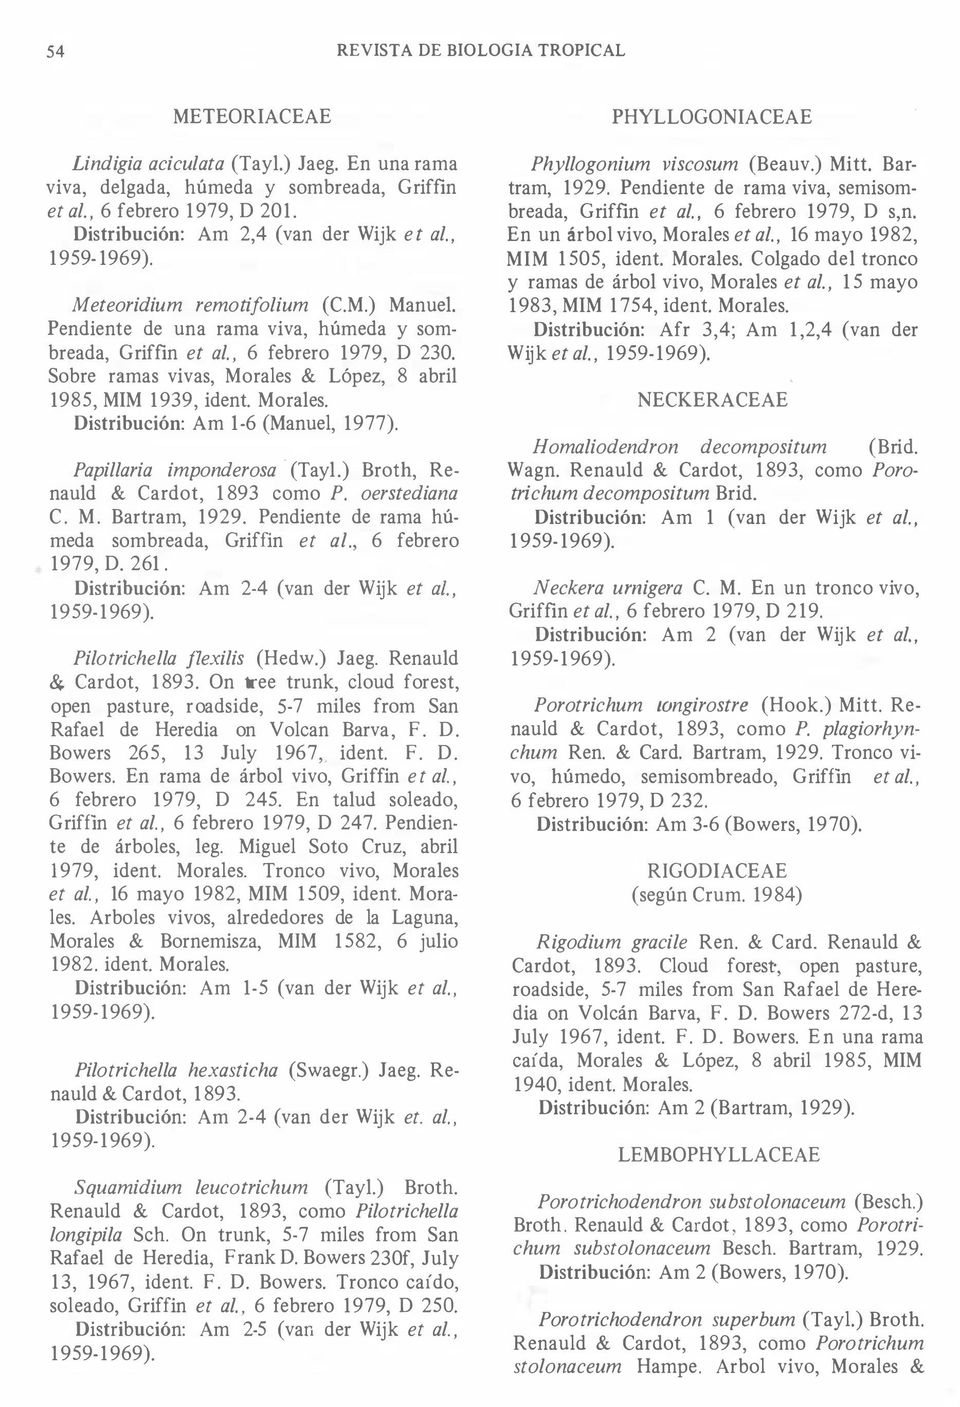 Papillaria imponderosa - (Tayl.) Broth, Renauld & Cardot, 1893 como P. oerstediana C. M. Bartram, 1929. Pendiente de rama húmeda sombreada, Griffin et al., 6 febrero 1979, D. 261.